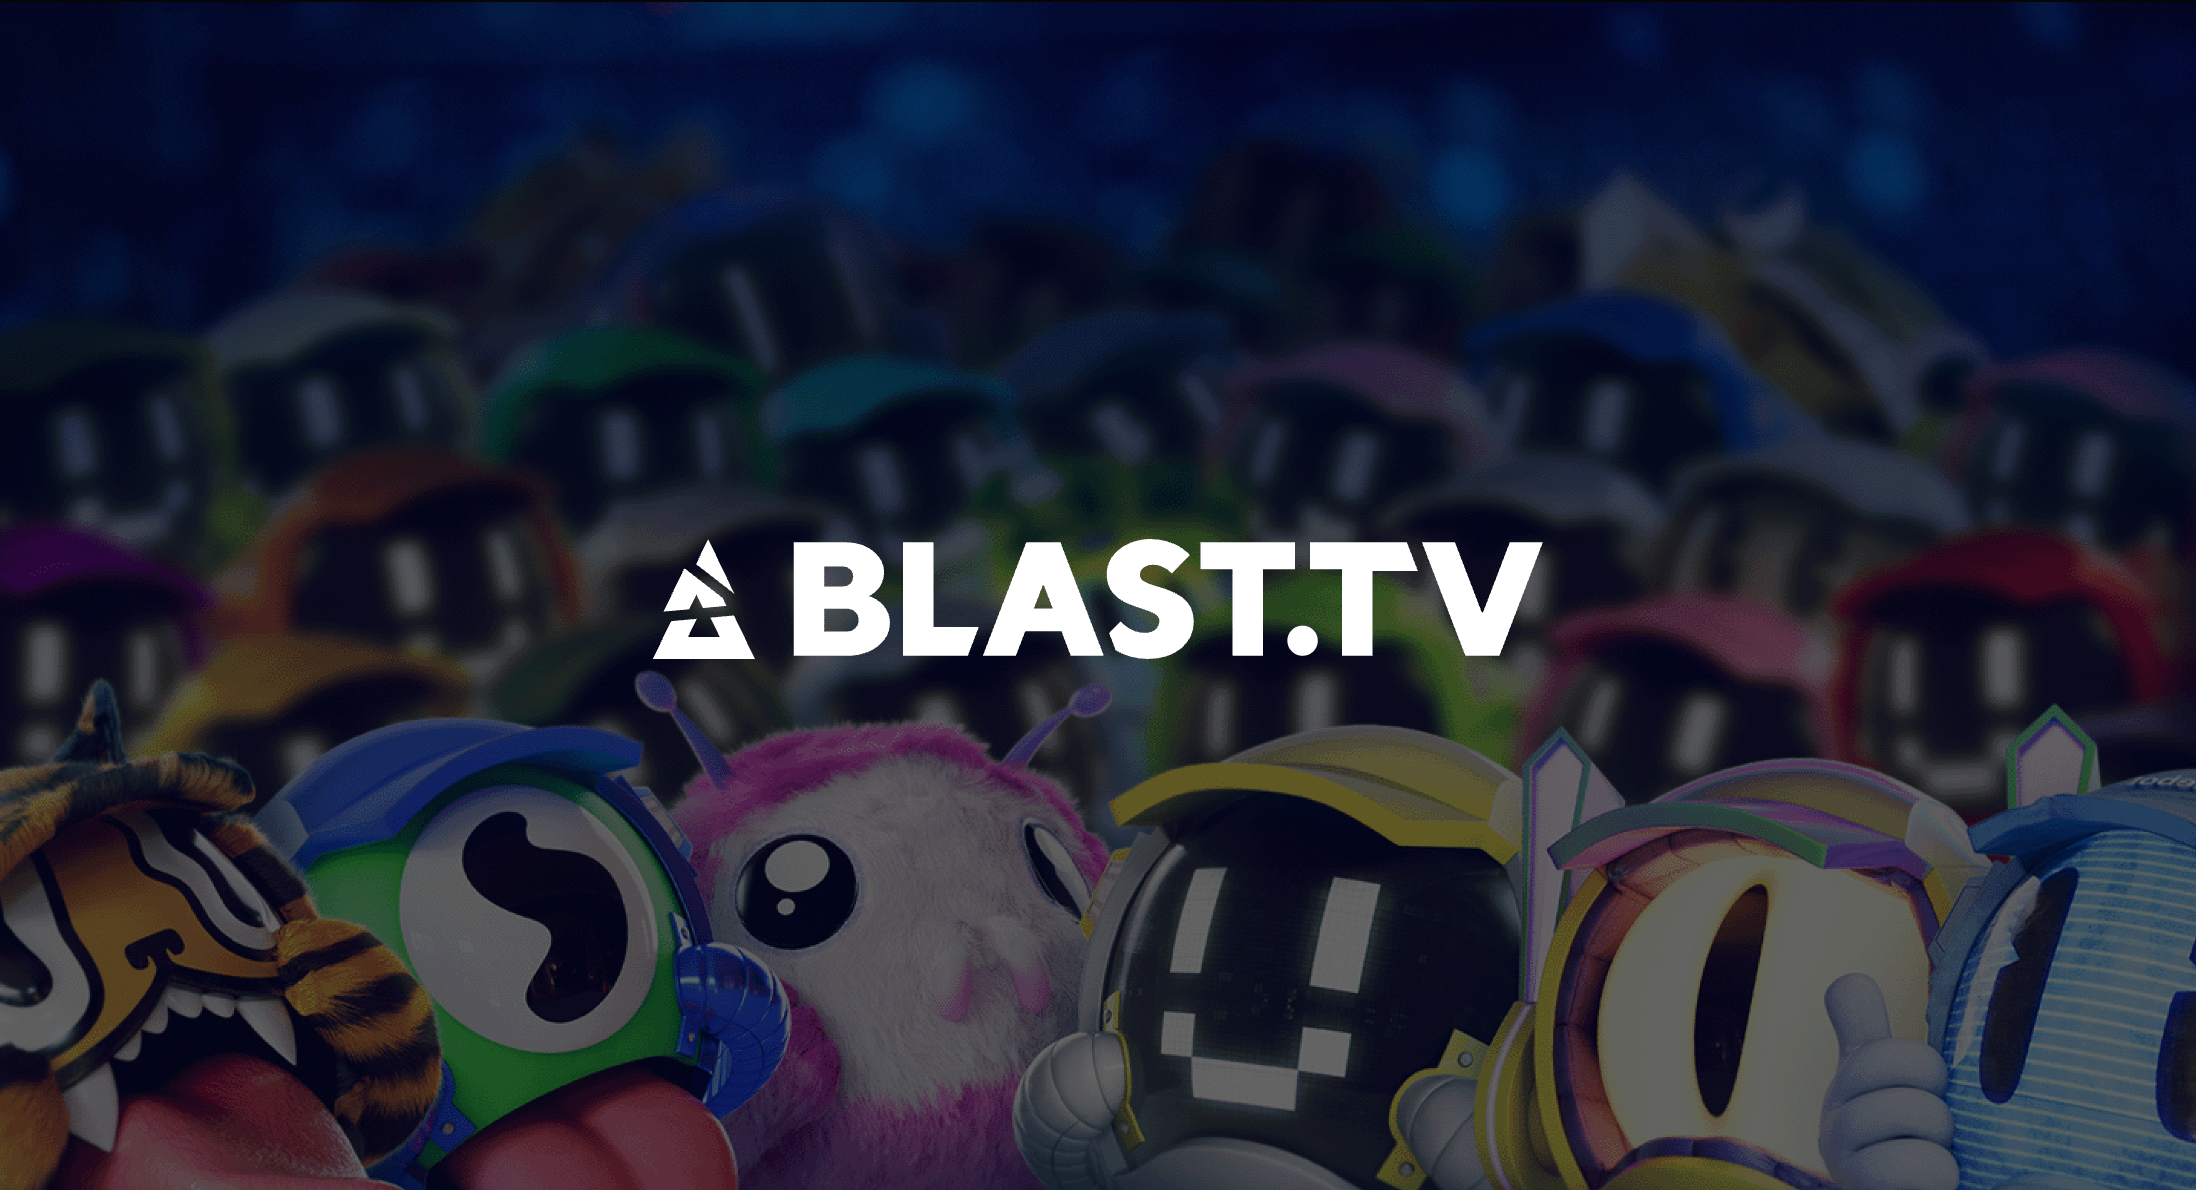 BLAST.tv – Tempatnya Turnamen CS Terbaik, Berita CS, dan Komunitas Esports